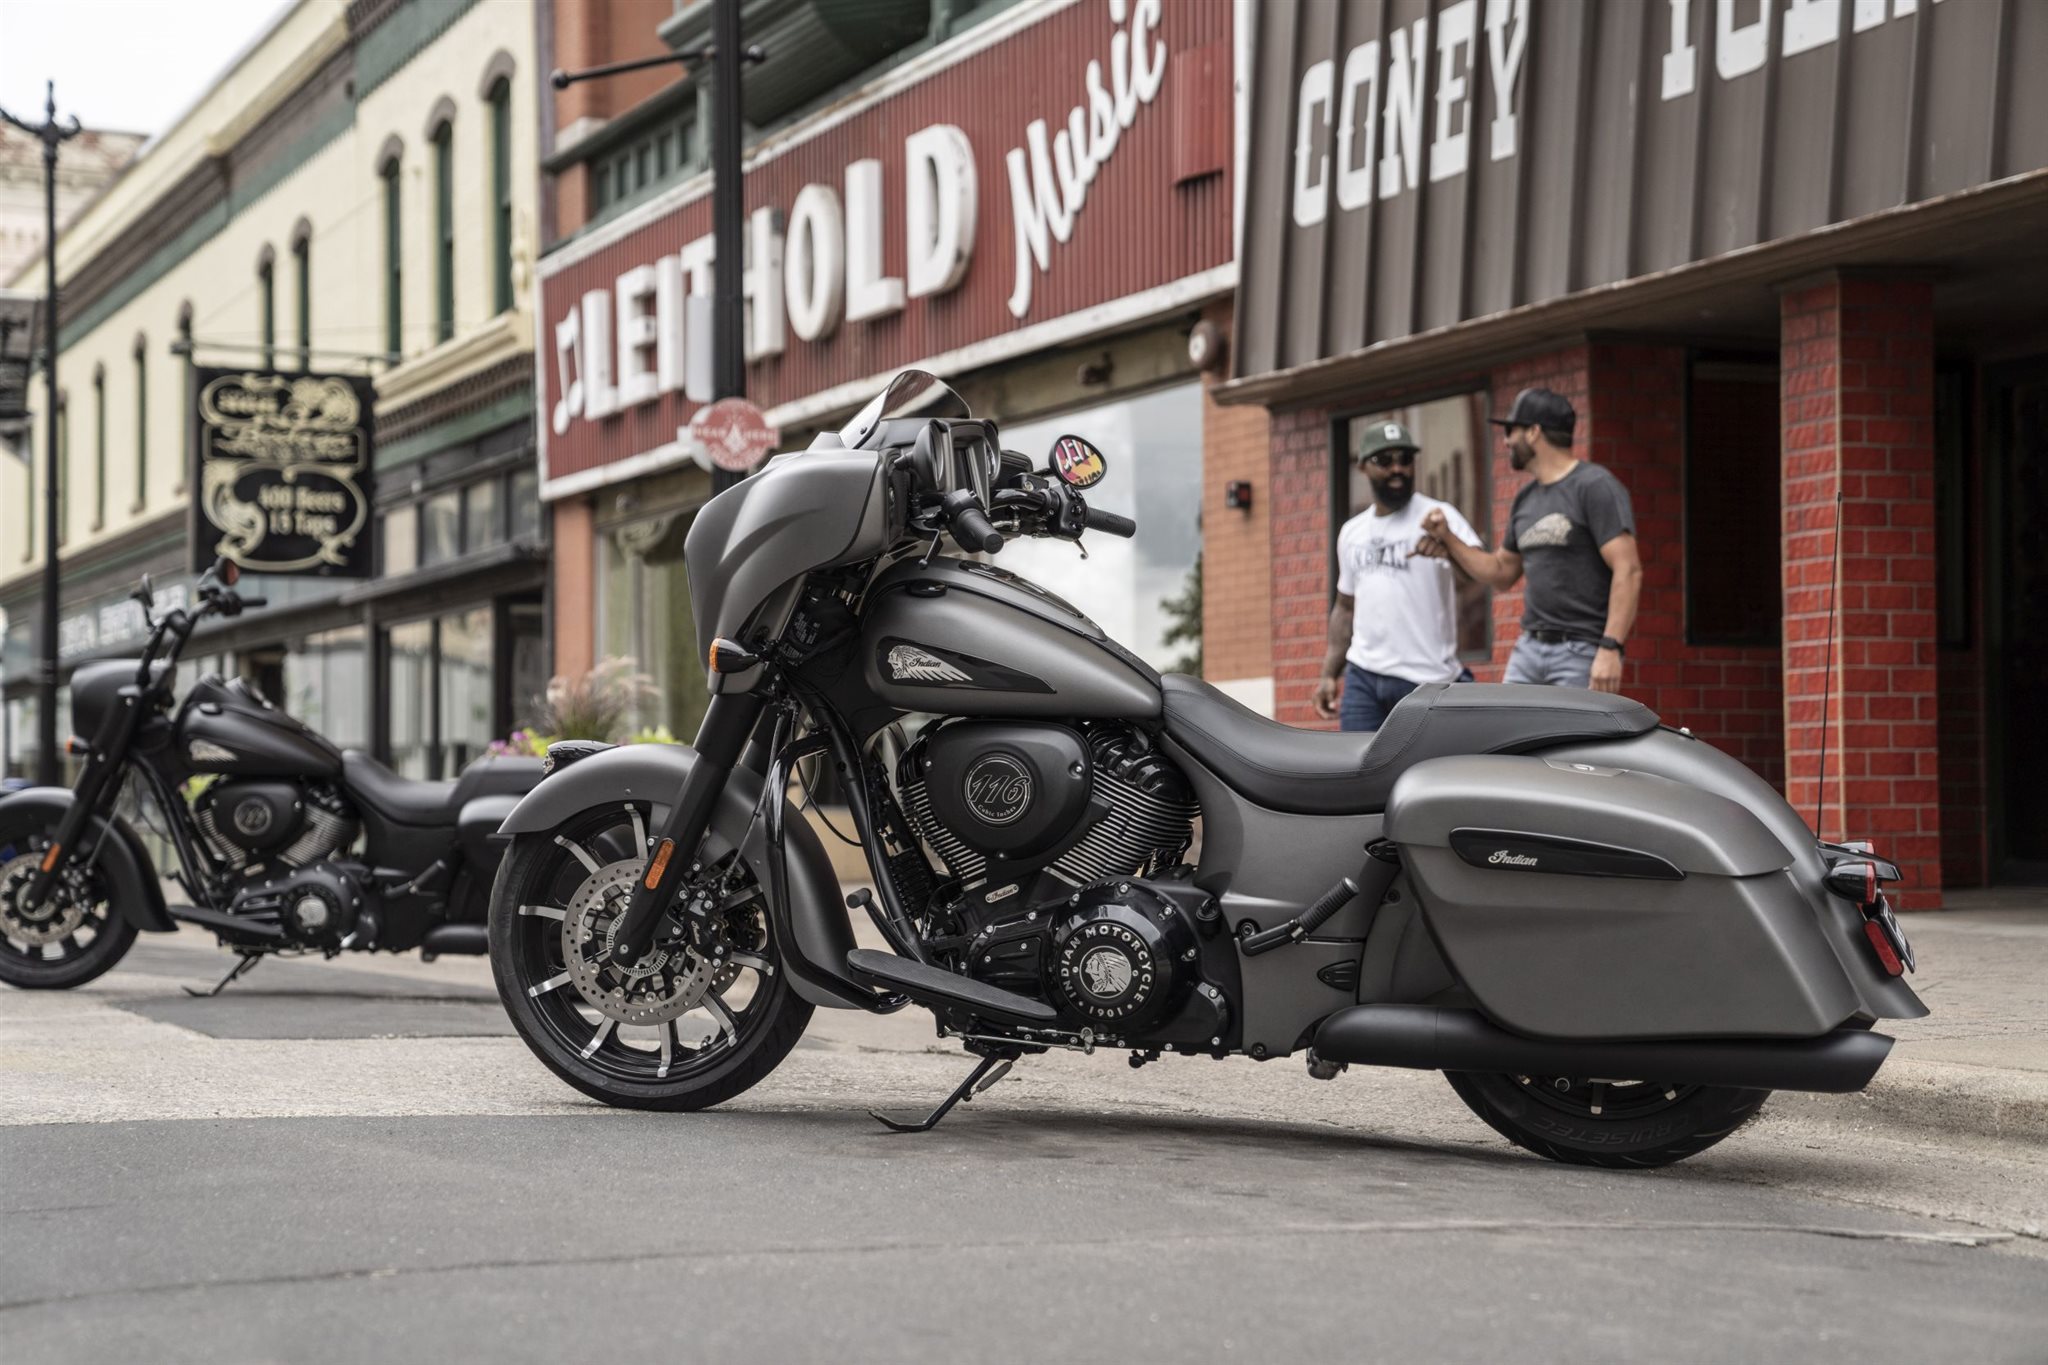 Motorrad Vergleich Indian Chieftain Dark Horse 2021 Vs Harley Davidson Cvo Ultra Limited Flhtkse 2018